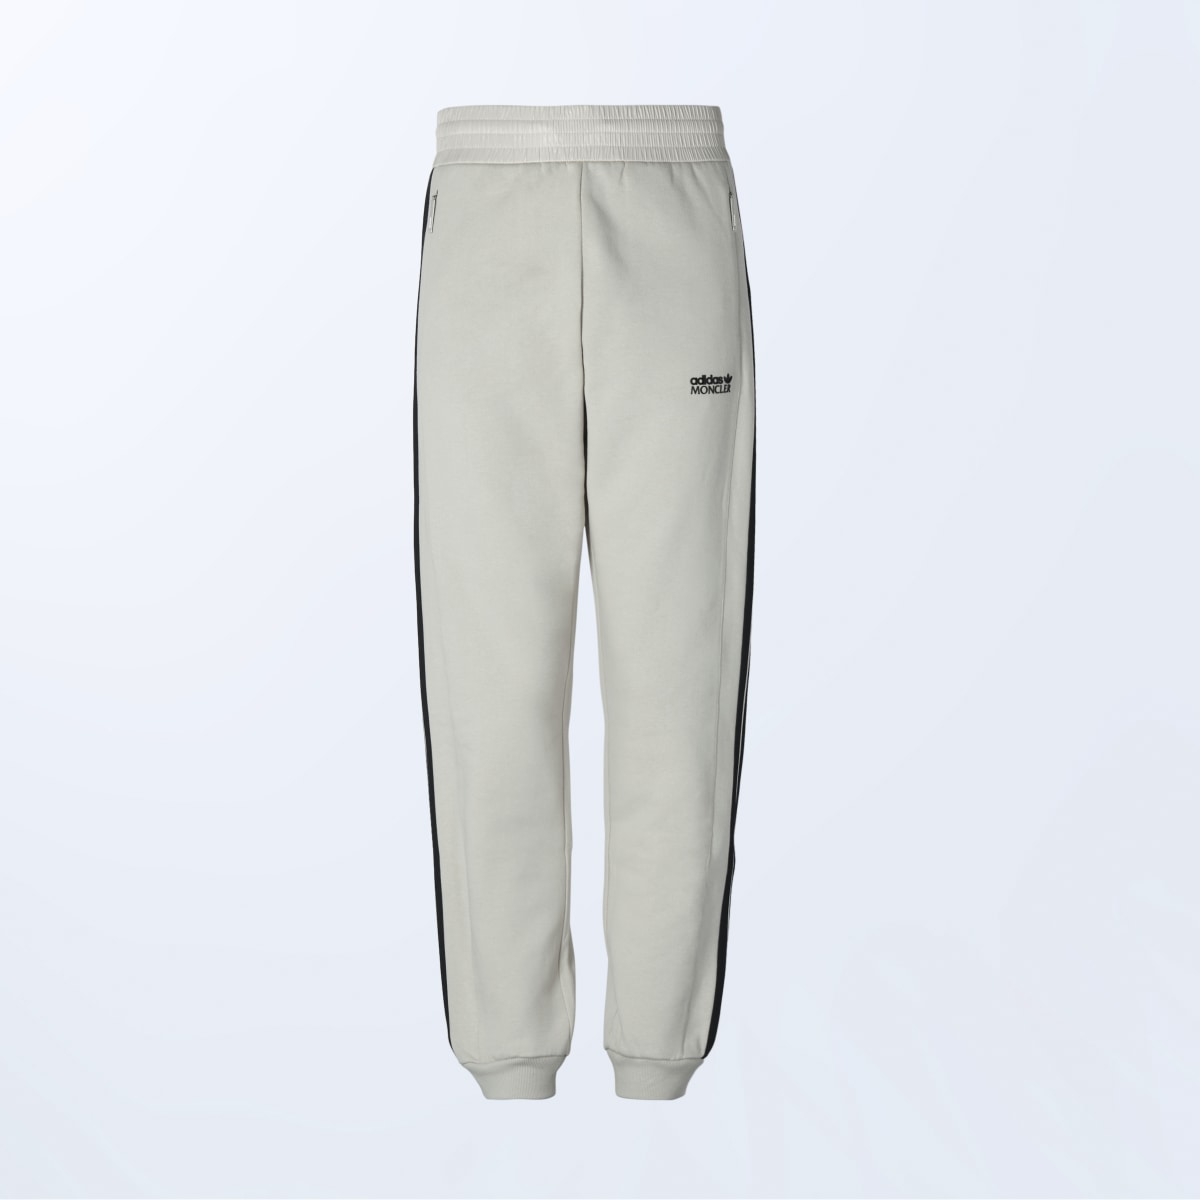 Adidas Pants Moncler. 6